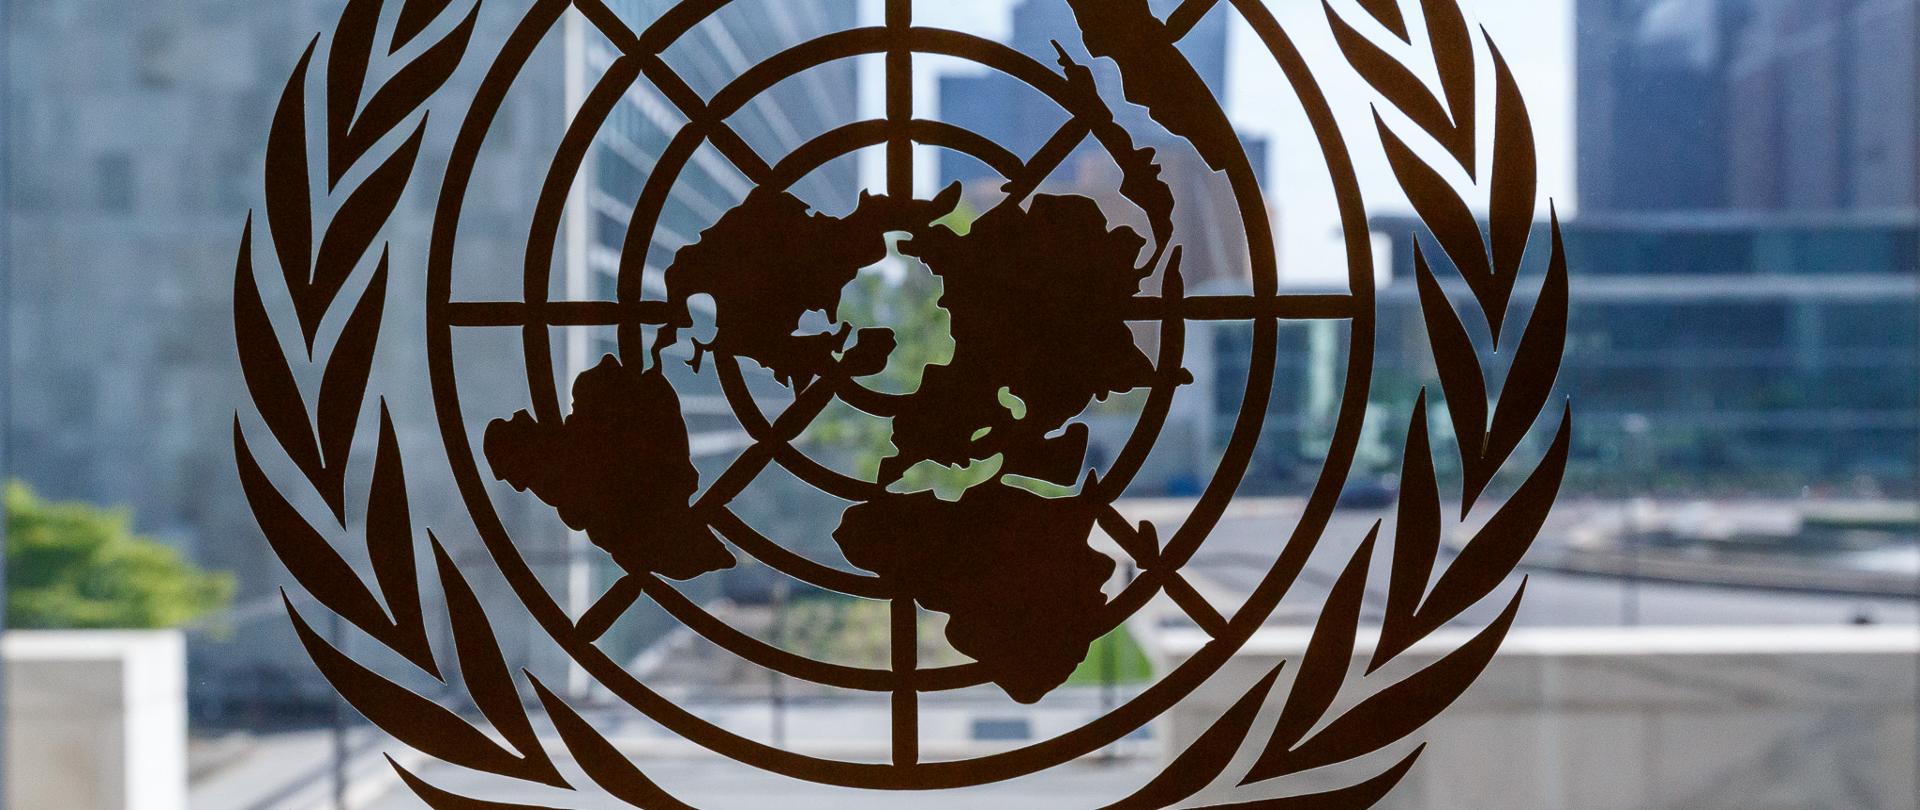 Logo of the UN